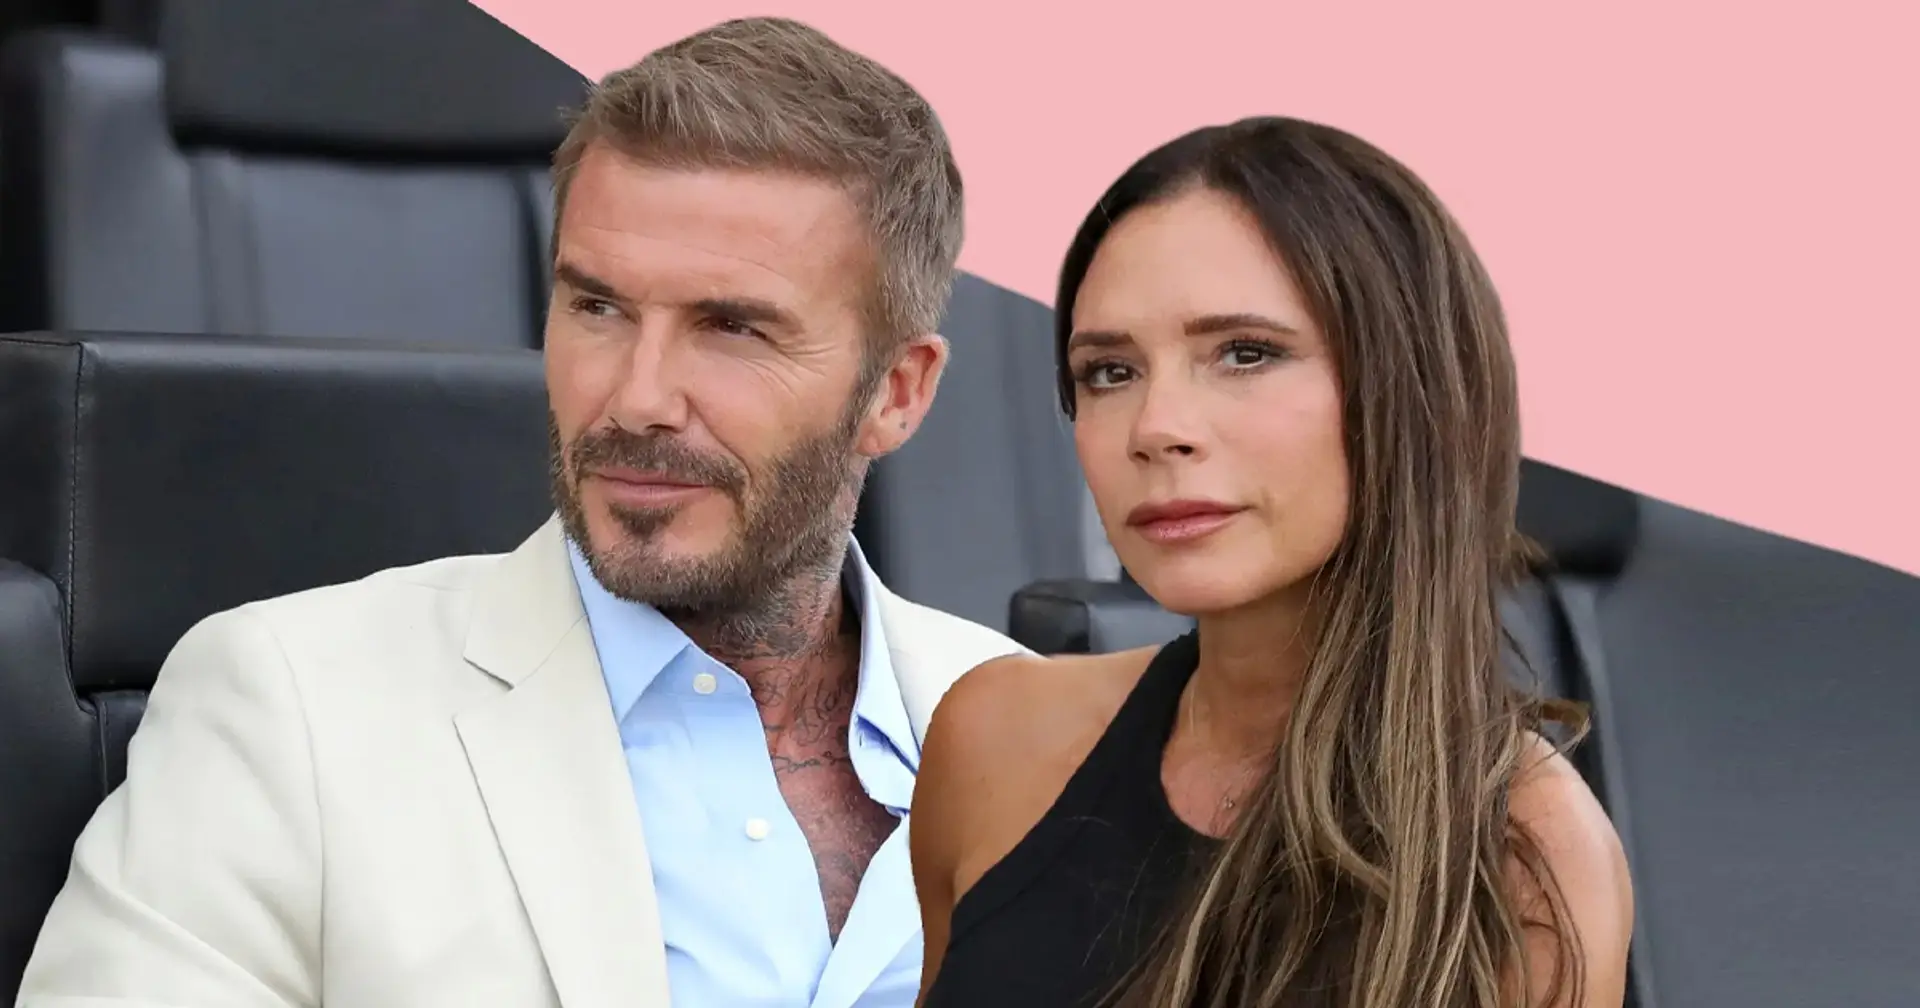 "Beckhams Frau ist absolut unerträglich": Victoria wird für seltsamen Vorfall kritisiert, als David für Real Madrid spielte